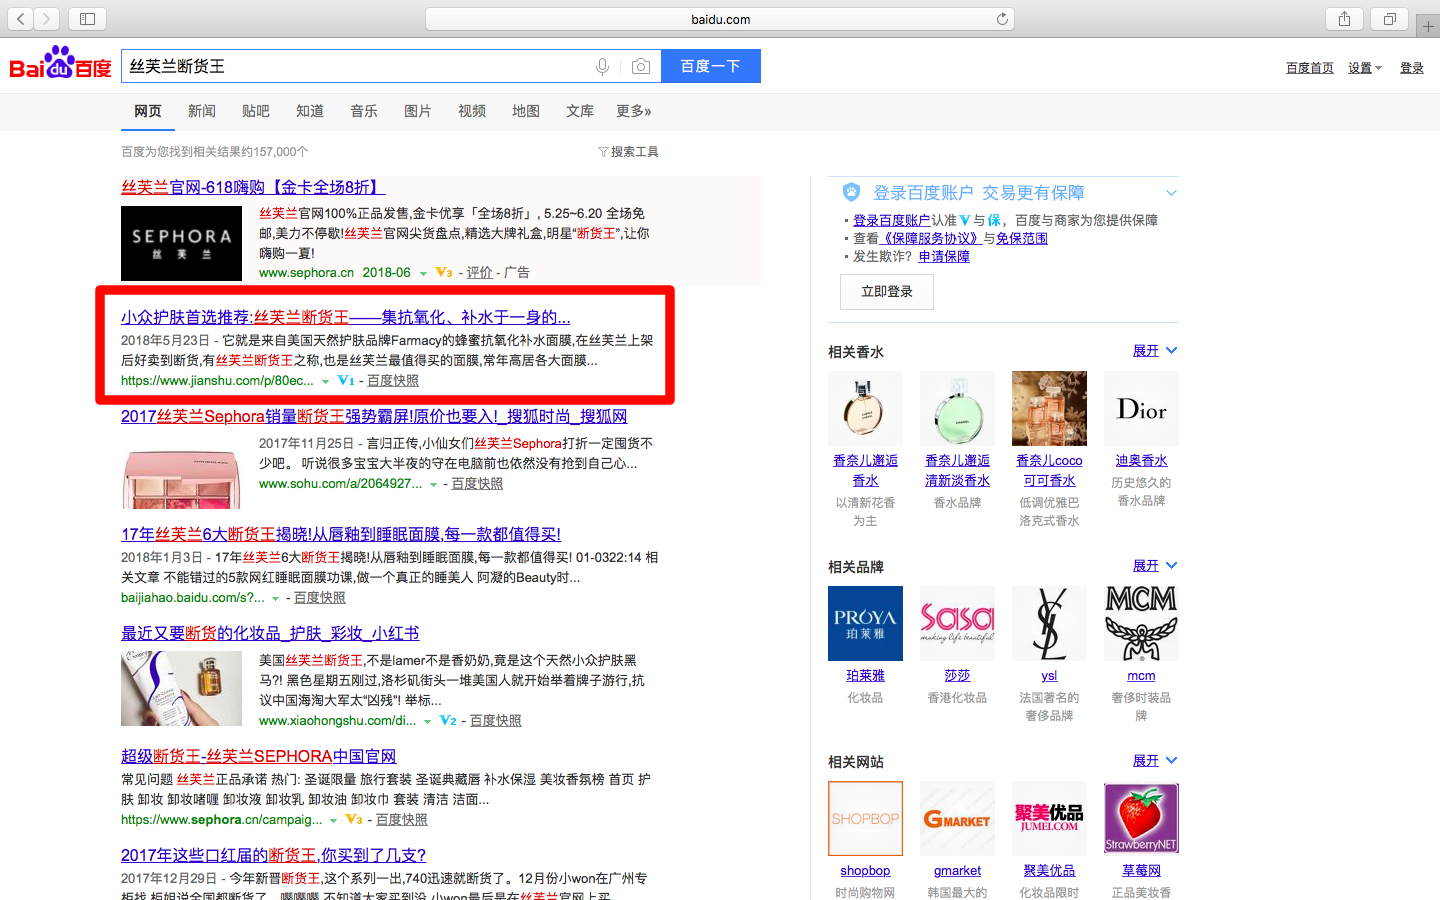 Используя немного магии SEO,   засеянный контент   В настоящее время занимает первую и вторую страницы поиска Baidu по нескольким целевым ключевым словам бренда, в том числе на первой странице рейтинга по высококонкурентному ключевому слову с преобладанием контента Sephora